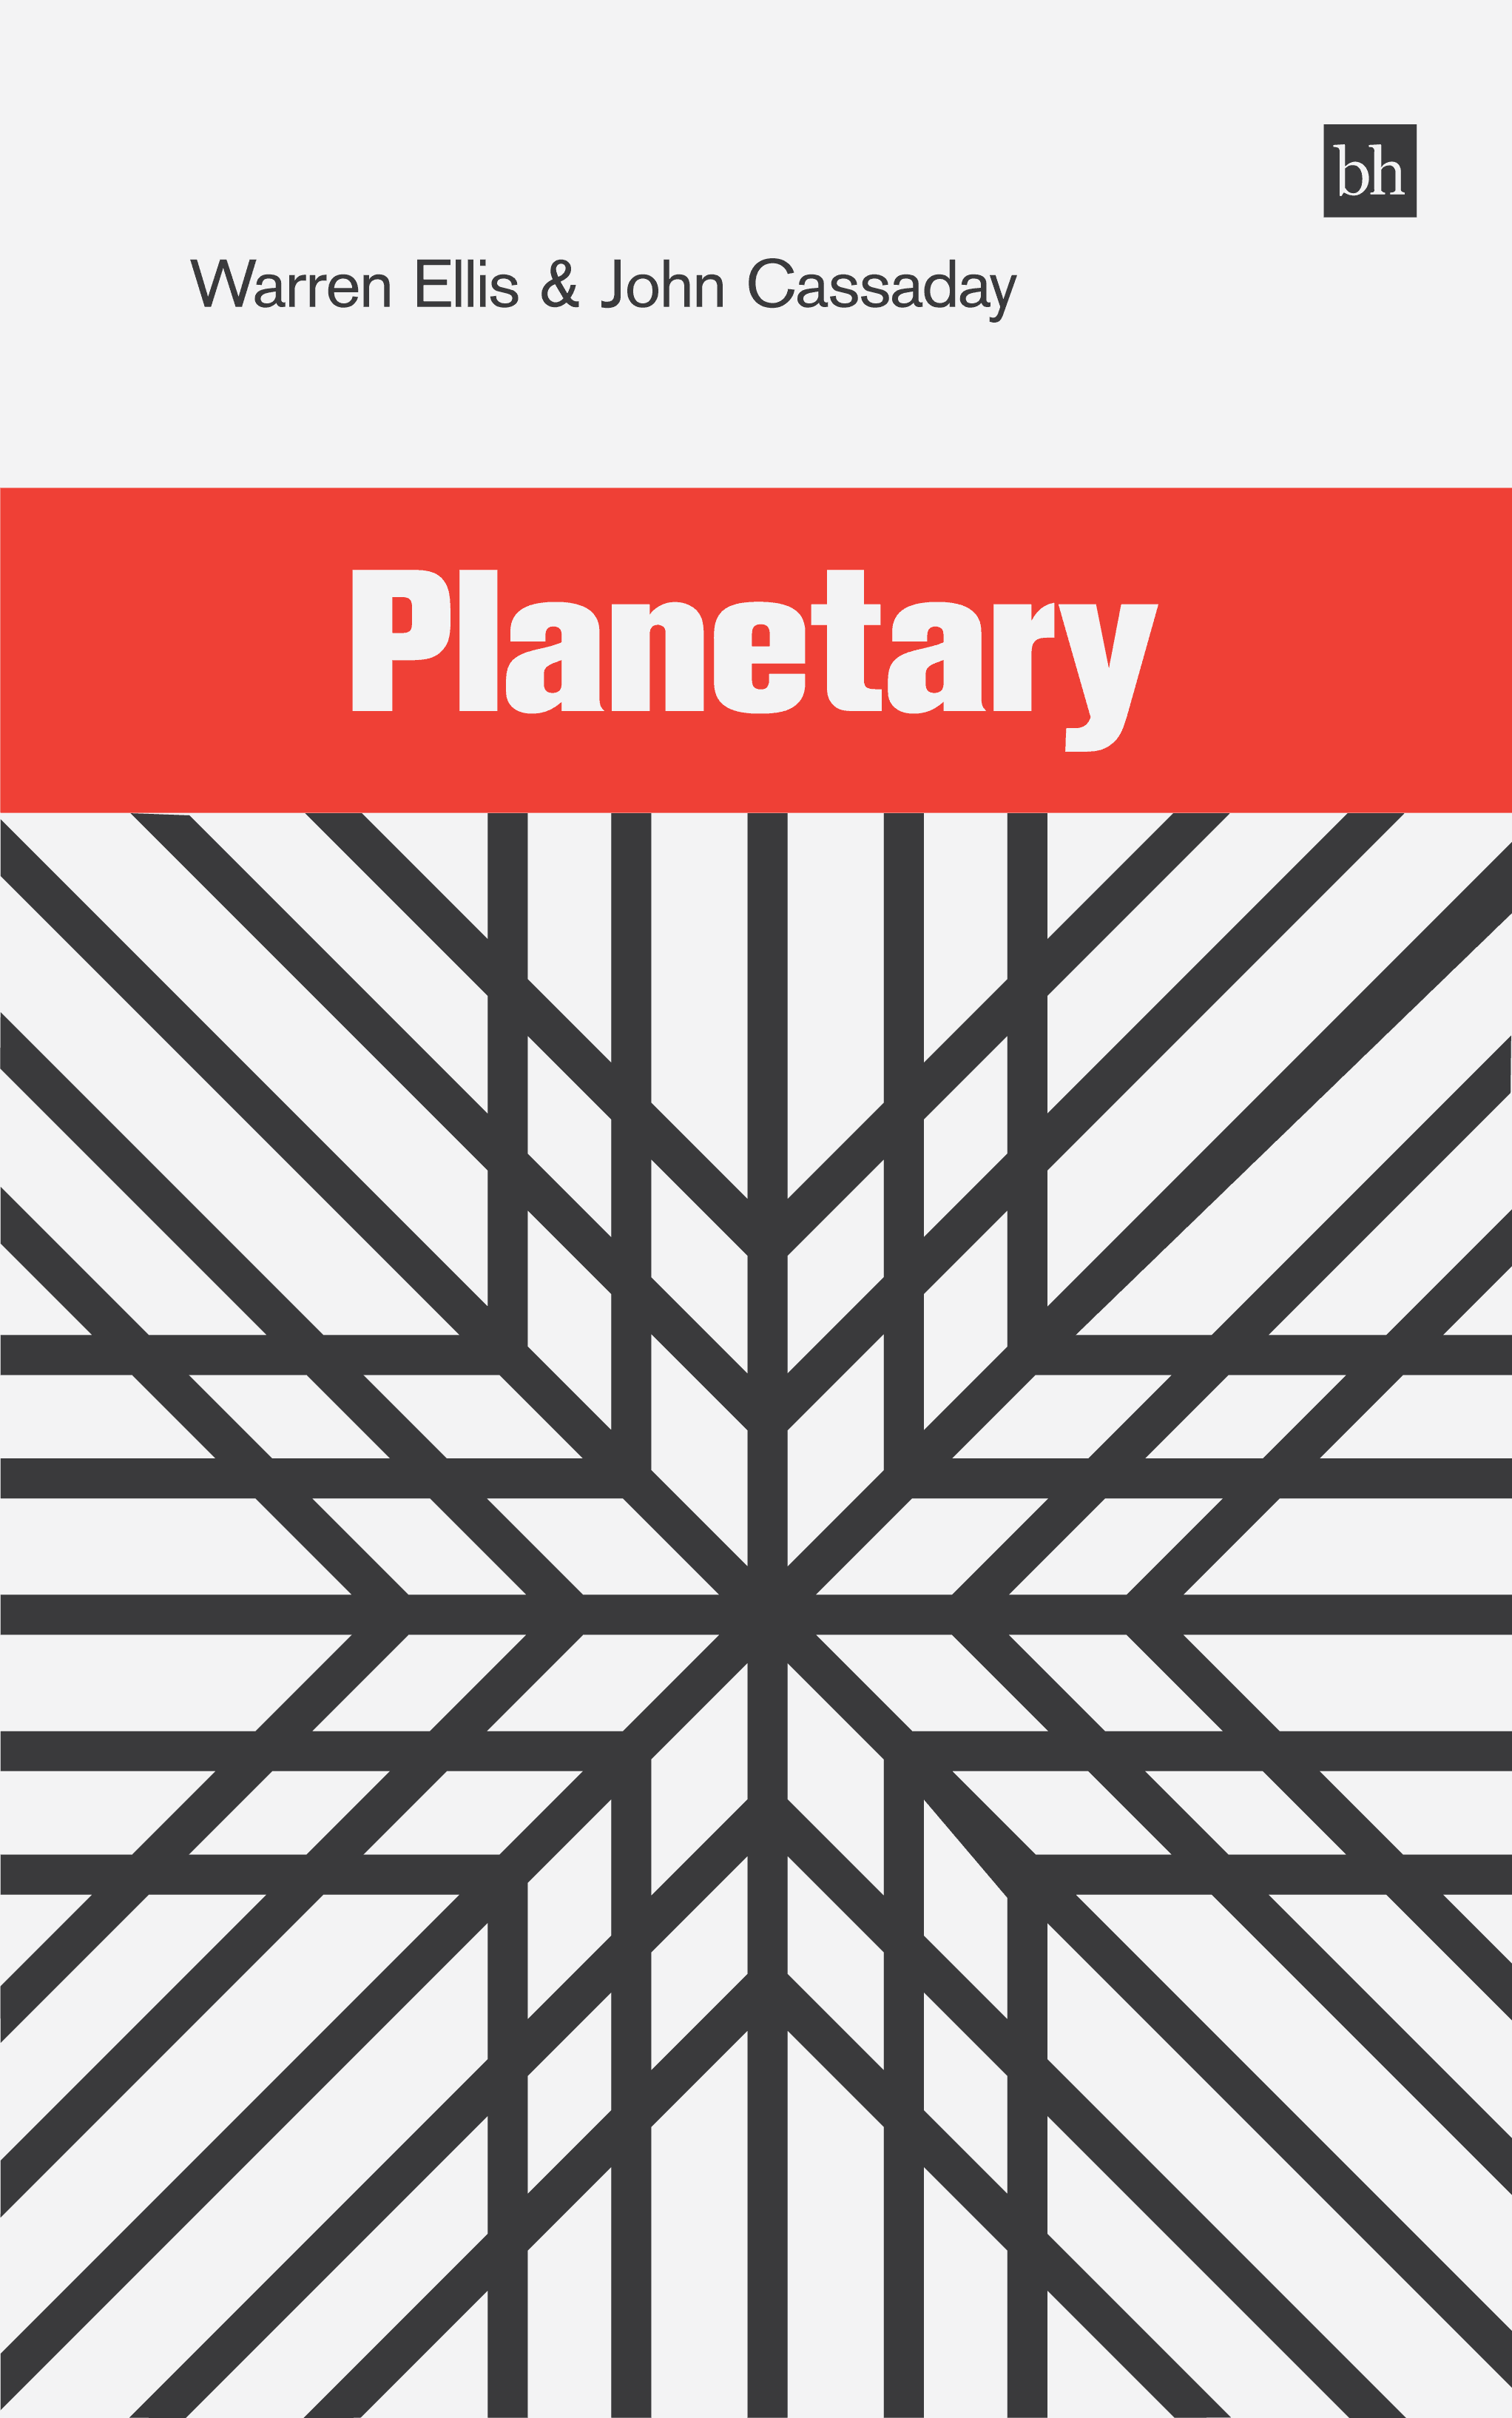 Planetary by Warren Ellis